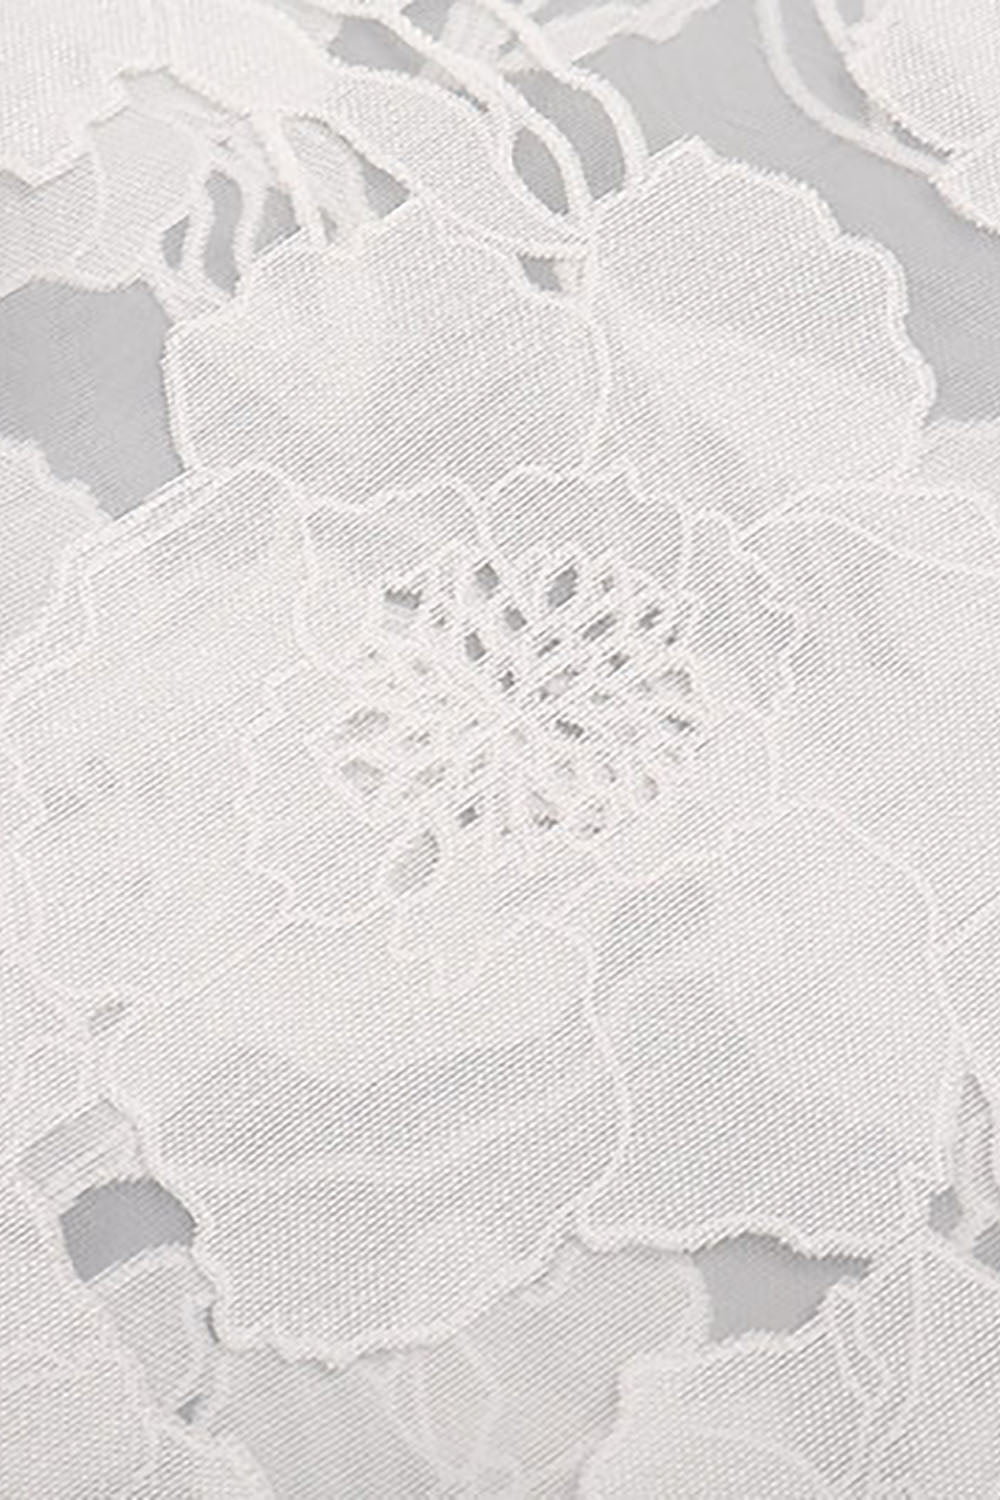 Robe de mariée silhouettes d'inspiration vintage florale à volants et dentelle